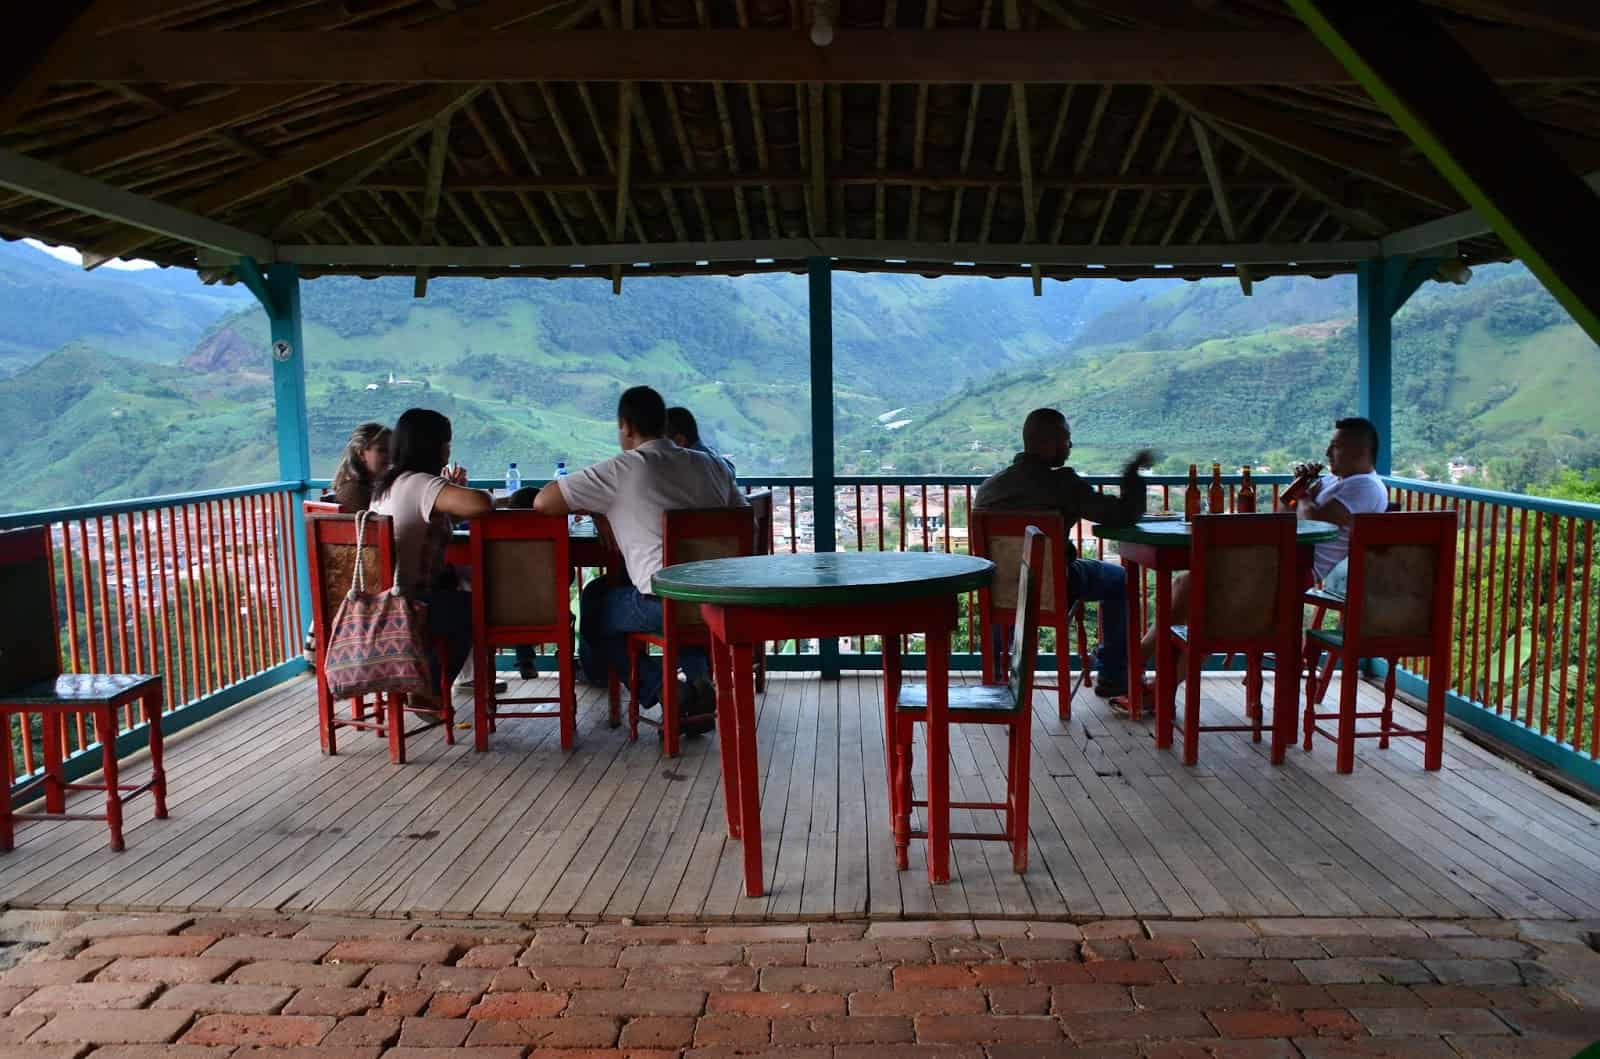 Café at La Garrucha in Jardín, Antioquia, Colombia